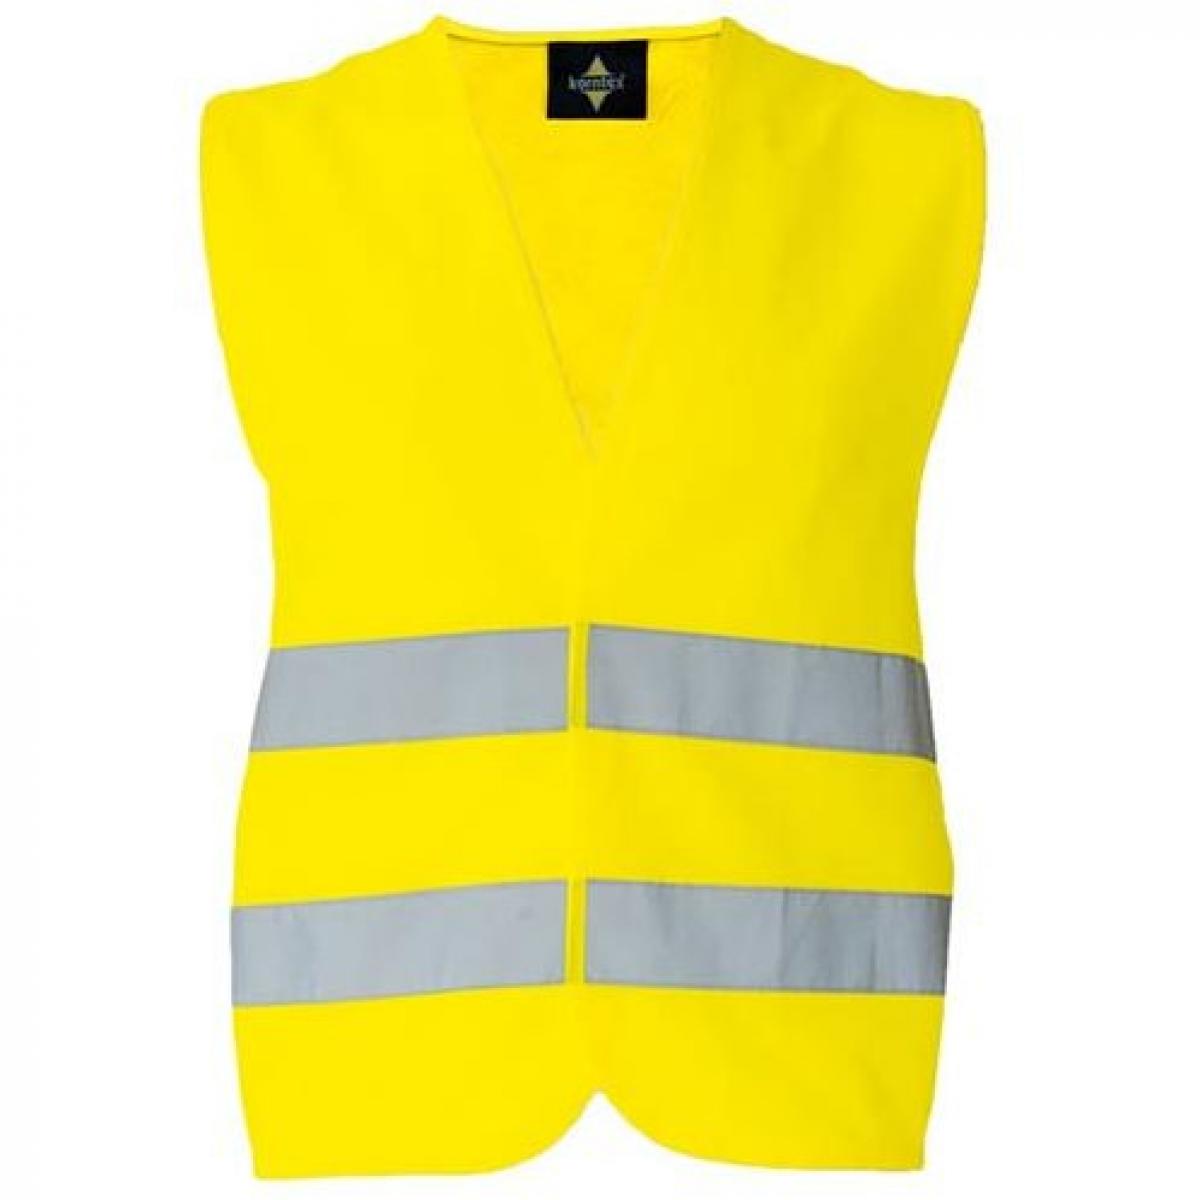 Hersteller: Korntex Herstellernummer: KXX217_D Artikelbezeichnung: Basic Safety Vest For Print Karlsruhe Sicherheitsweste Farbe: Signal Yellow